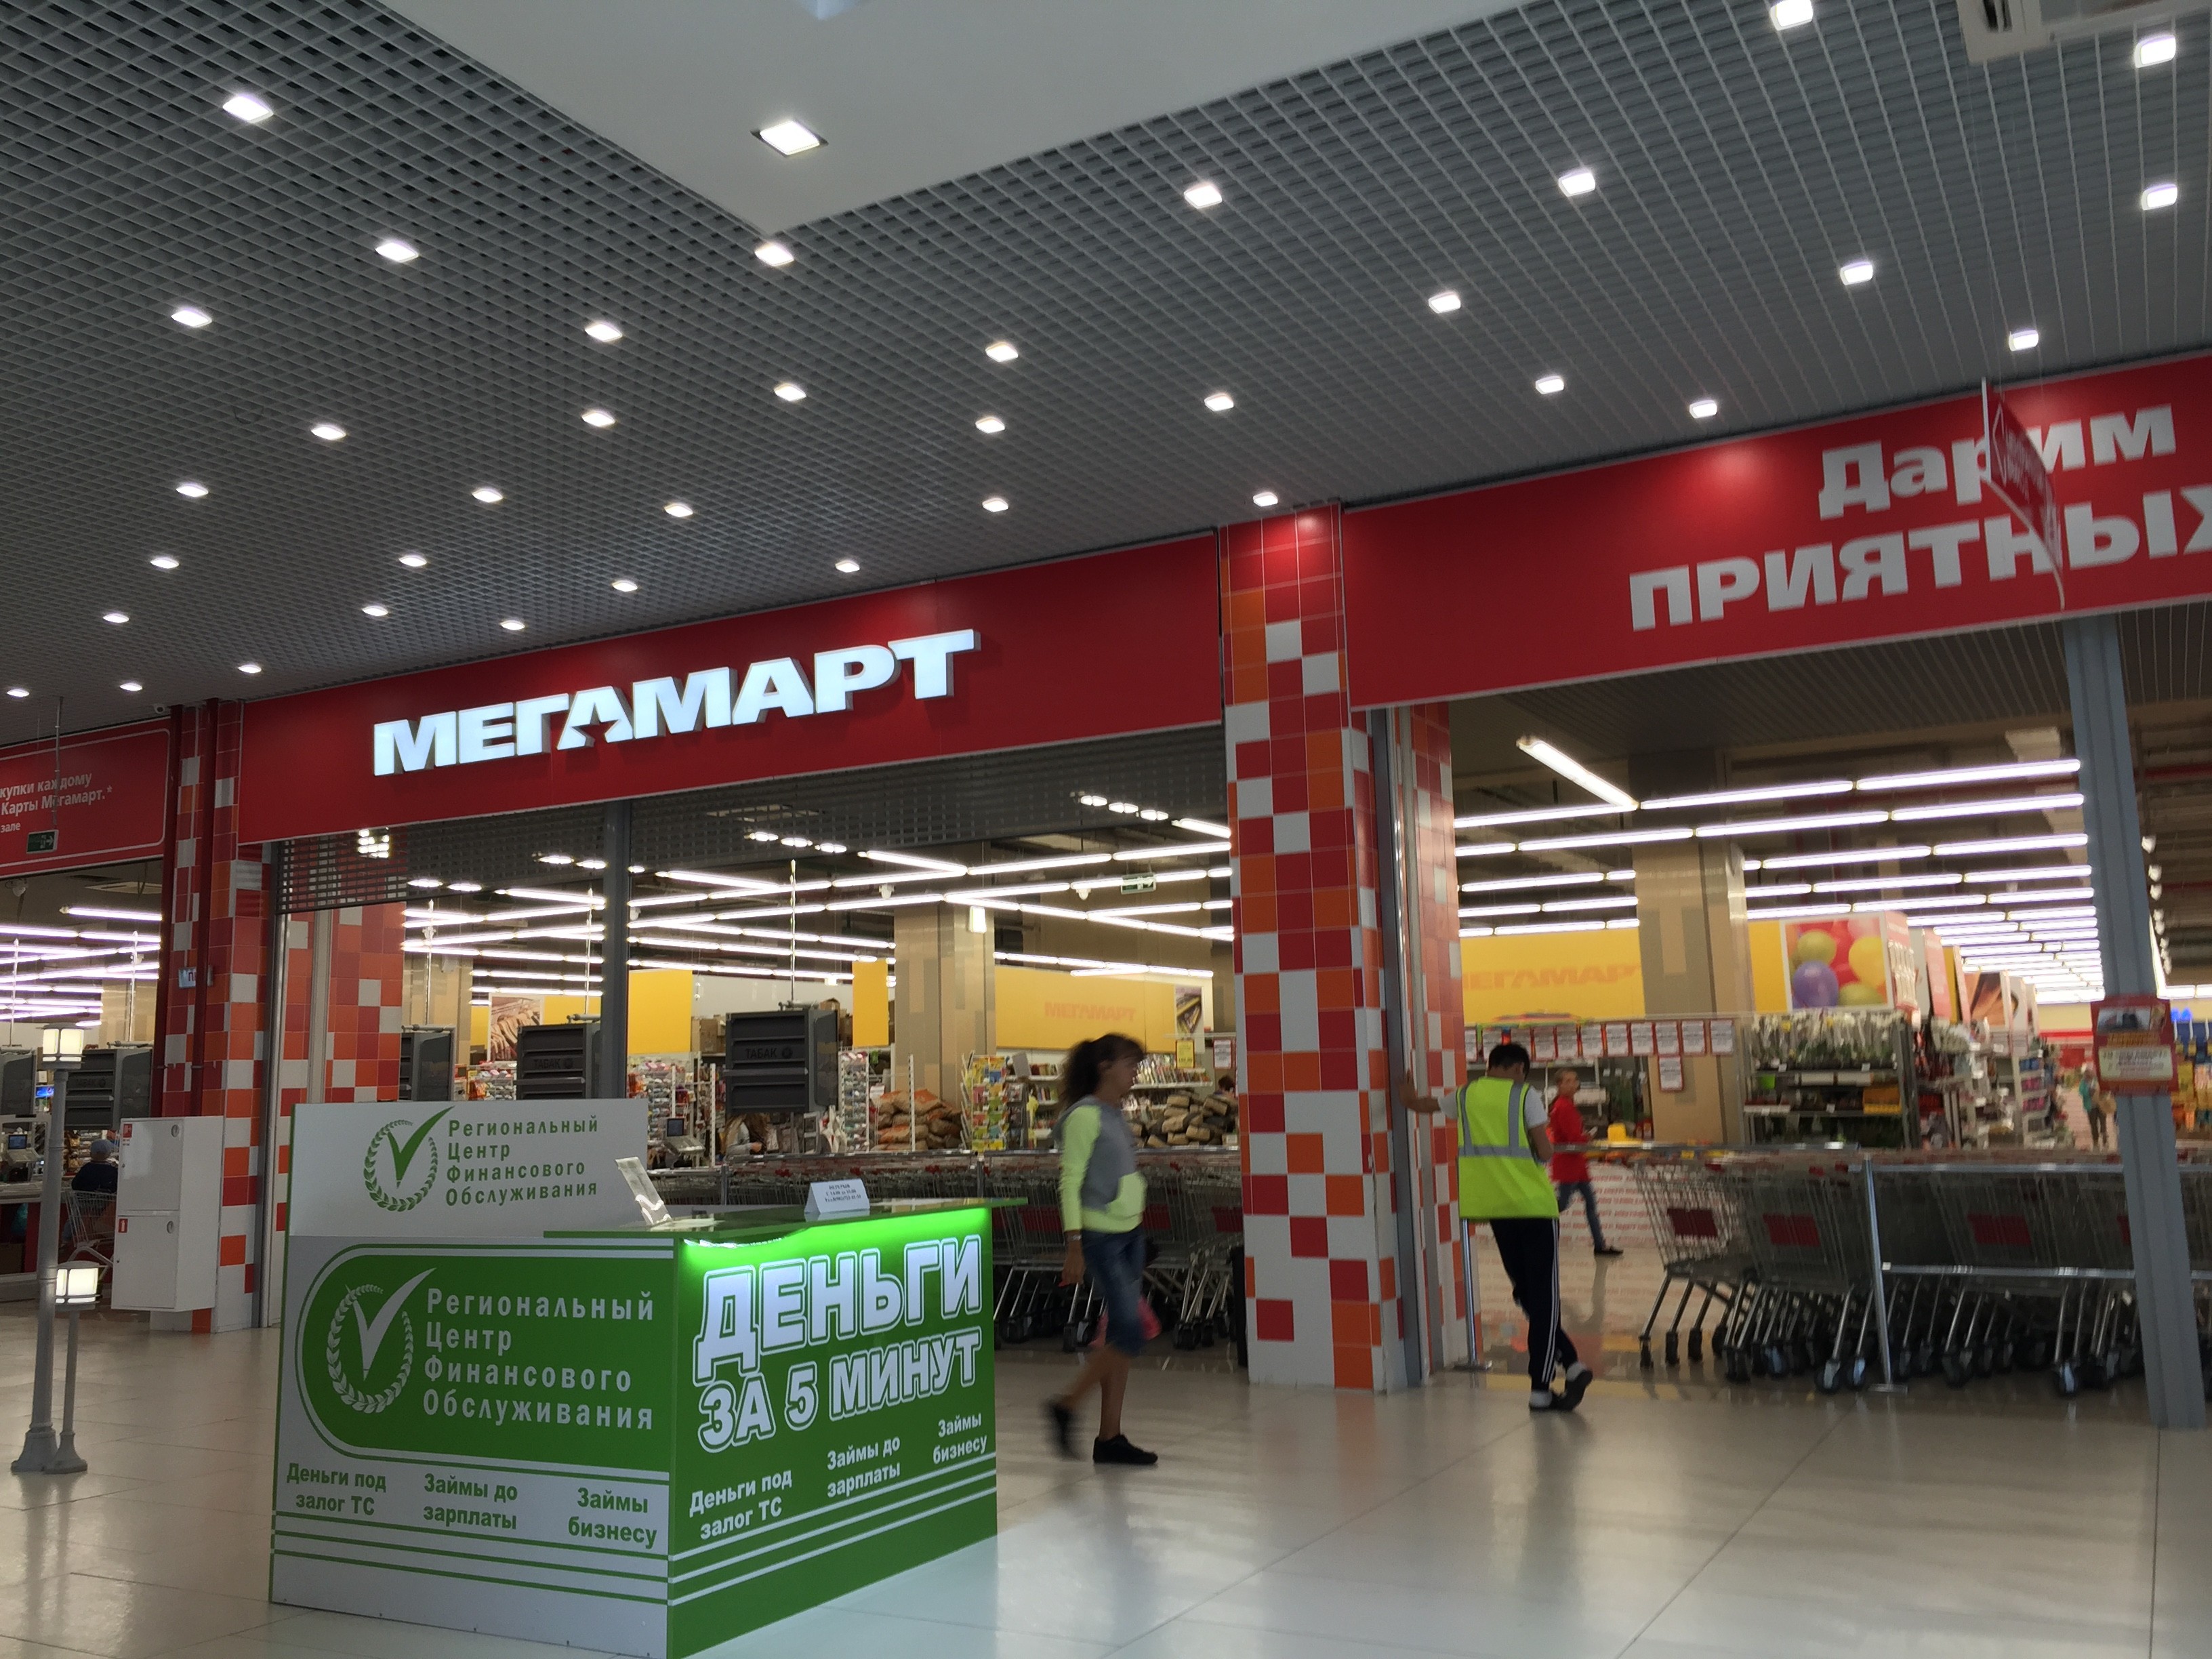 Сеть магазинов в екатеринбурге. Мегамарт. Торговая сеть Мегамарт. Мегамарт Екатеринбург. ТЦ Мегамарт.